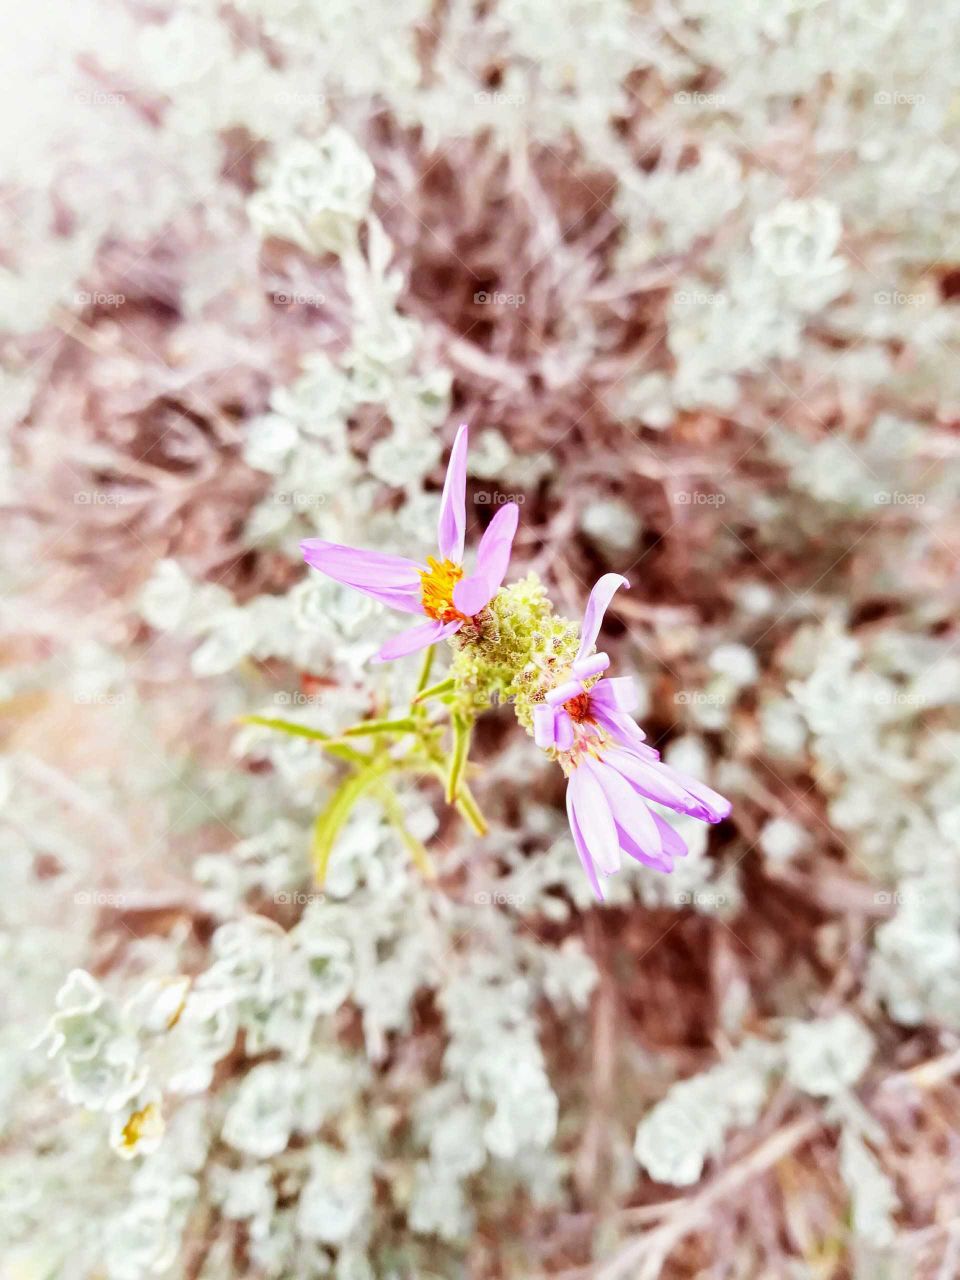 Desert Flowers in Bloom